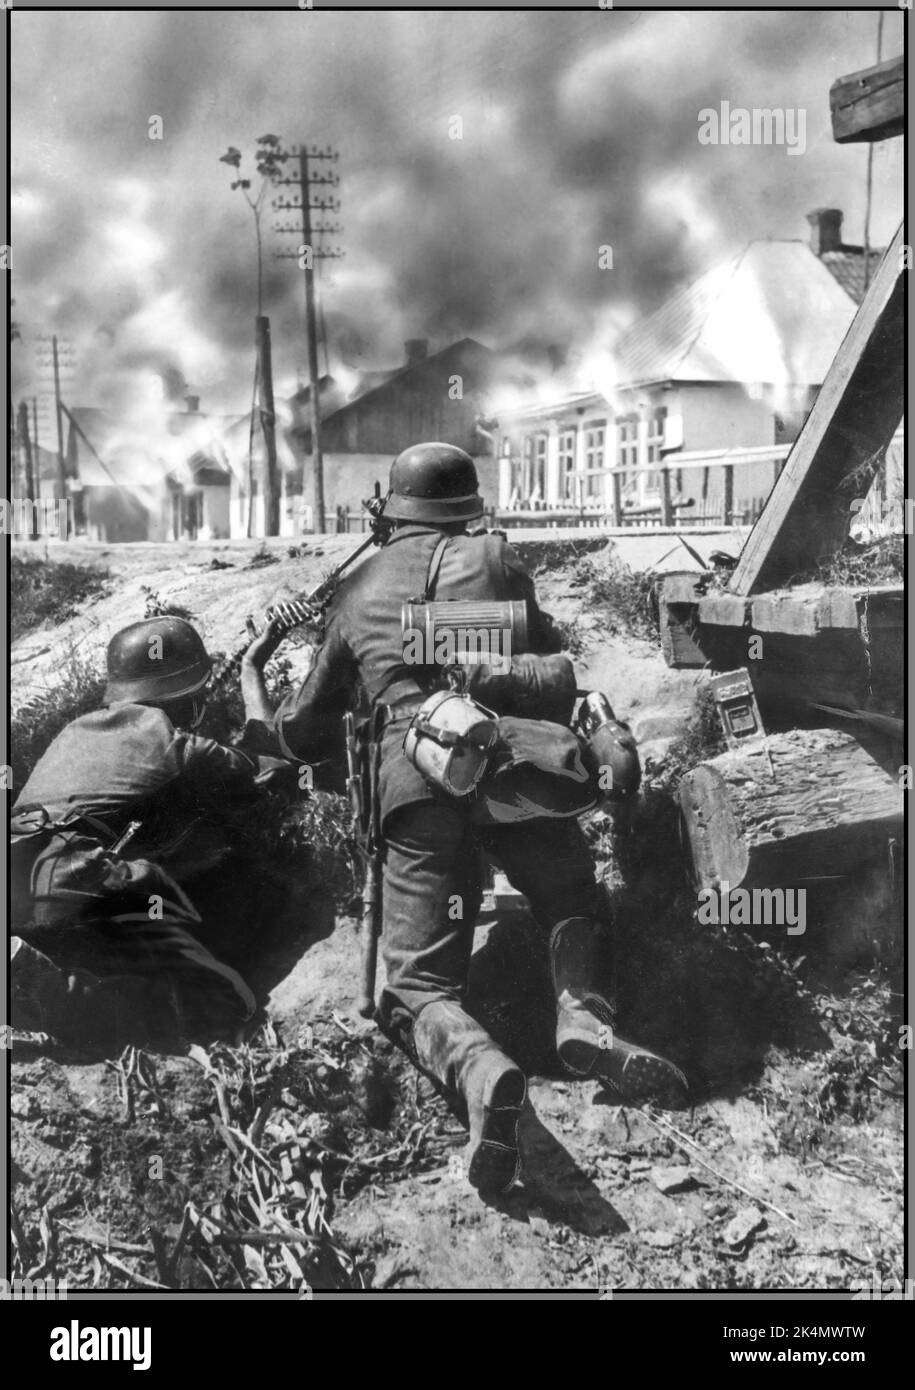 OPERATION BARBAROSSA WW2 zwei deutsche Soldaten halten an einer Brücke an der Ostfront ein MG 42 Maschinengewehr. Datum Juli 1941 die Operation Barbarossa war die Invasion der Sowjetunion durch Nazi-Deutschland und viele seiner Verbündeten der Achsenmächte, die am Sonntag, den 22. Juni 1941, während des Zweiten Weltkriegs begann Stockfoto